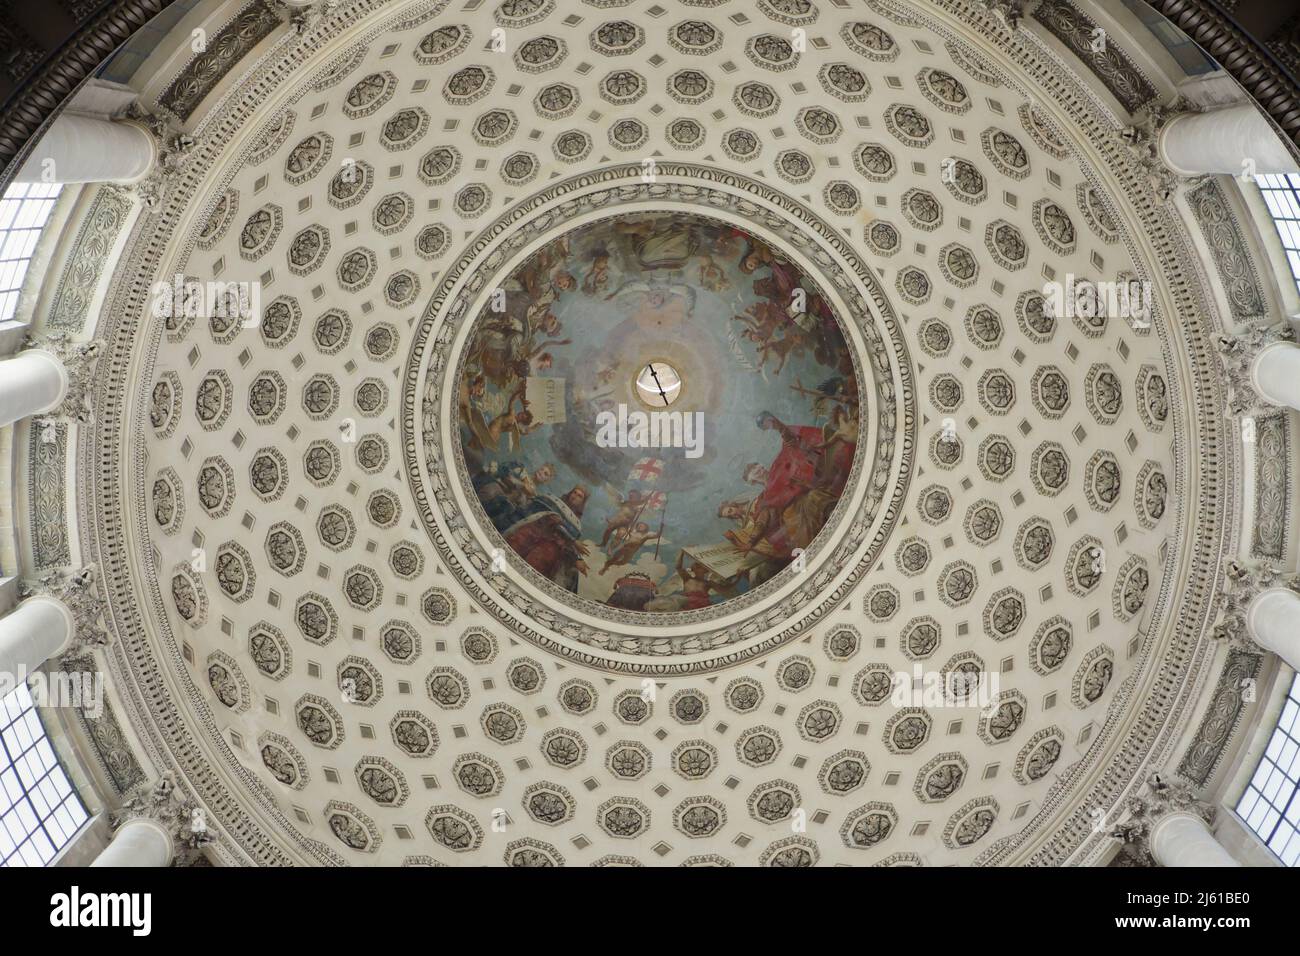 La apoteosis de Saint Genevieve representada en el fresco diseñado por el pintor francés Antoine-Jean Gros (1811–1834) dentro de la cúpula principal del Panteón diseñado por el arquitecto francés Jacques-Germain Soufflot (1758-1790) en París, Francia. Foto de stock